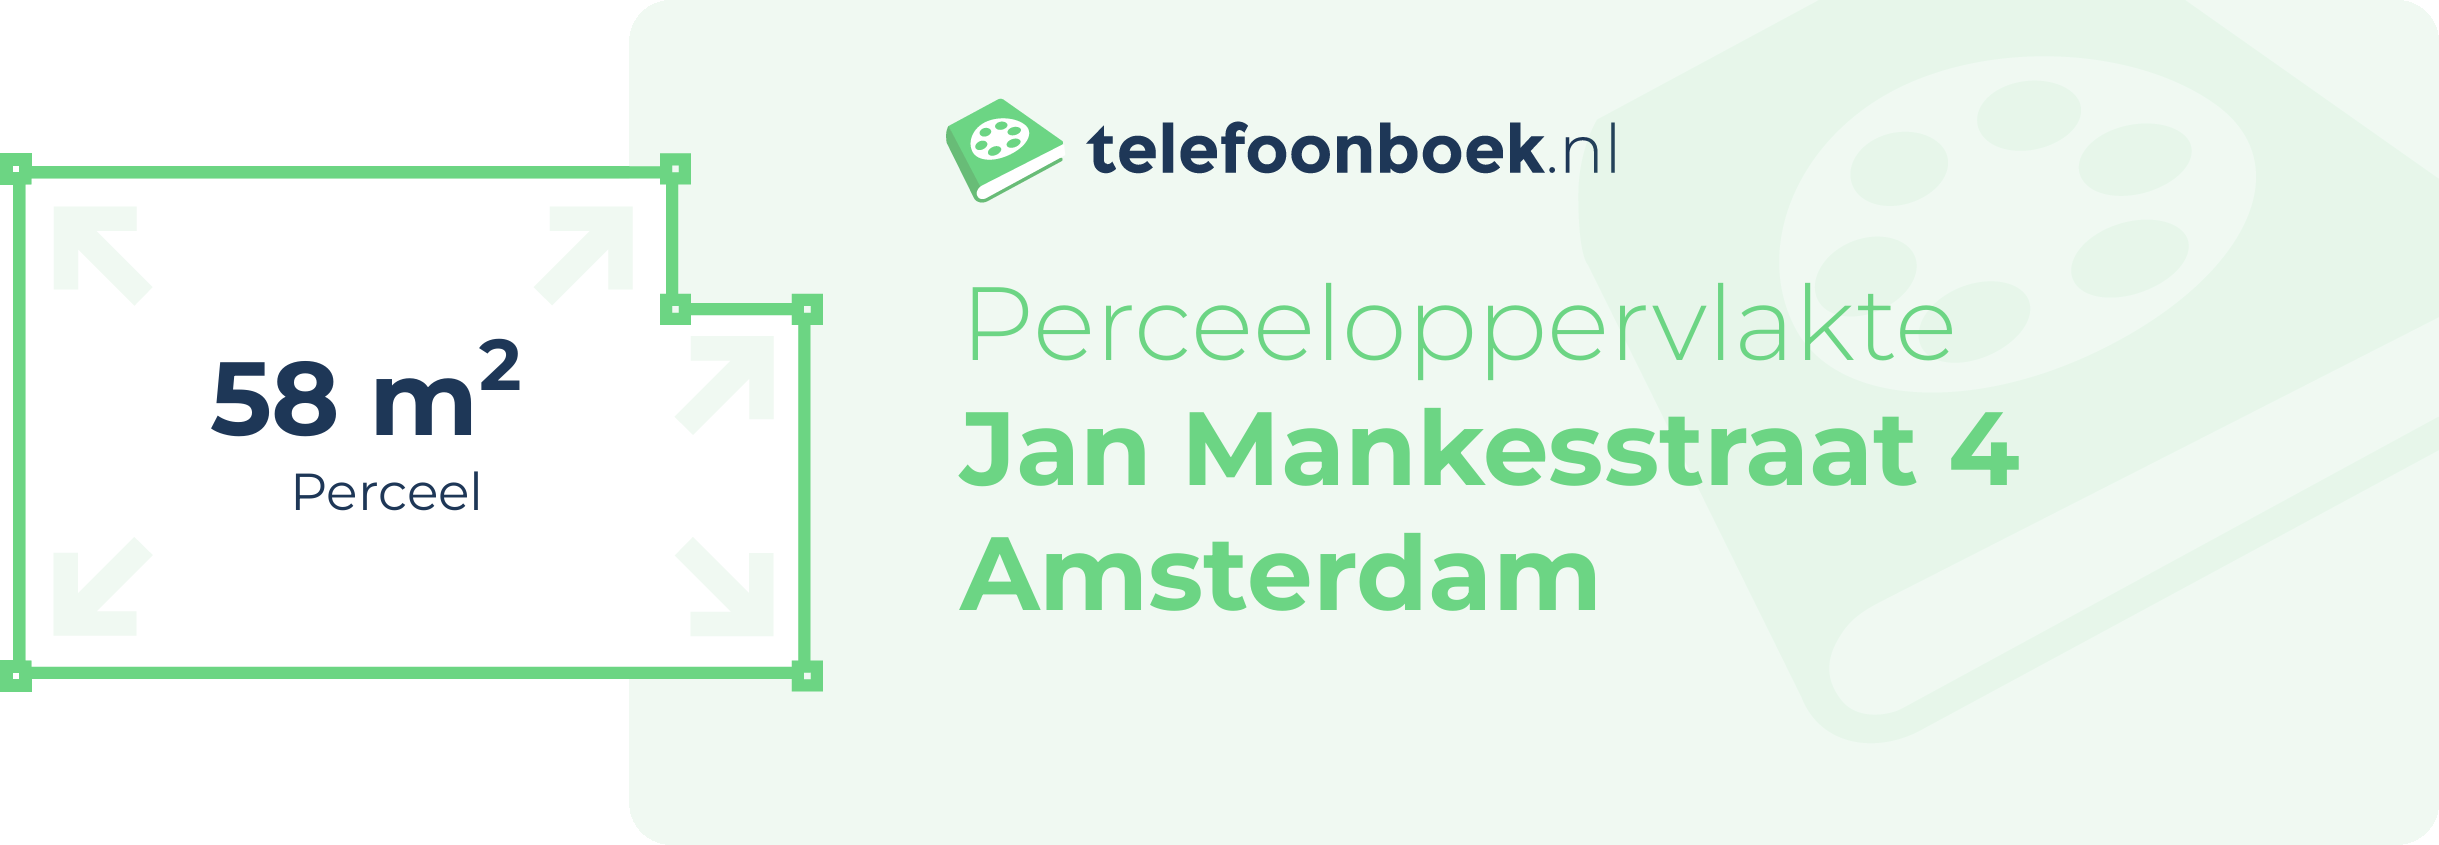 Perceeloppervlakte Jan Mankesstraat 4 Amsterdam